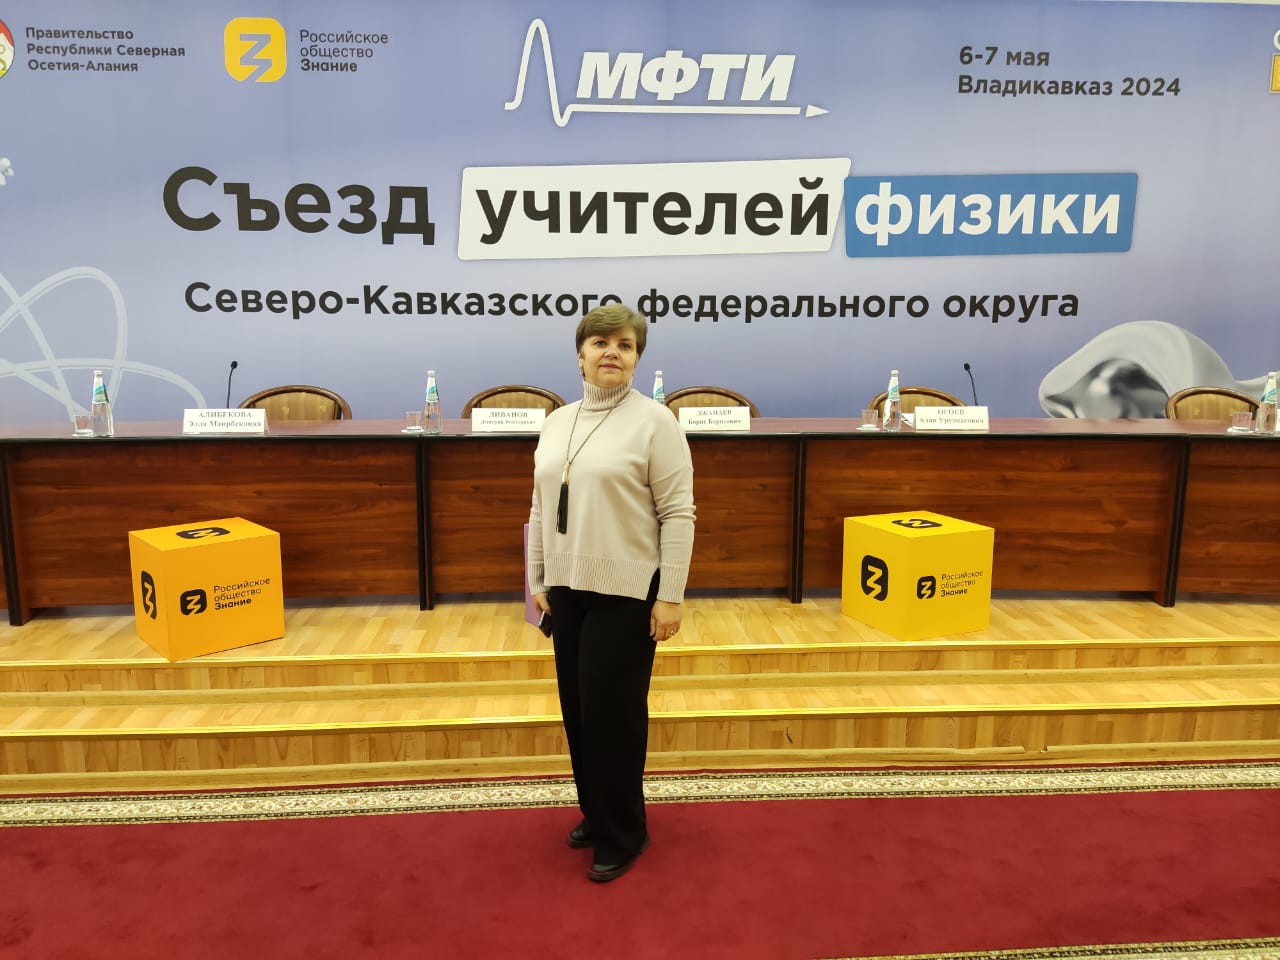 Первый Съезд учителей физики Северо-Кавказского федерального округа.